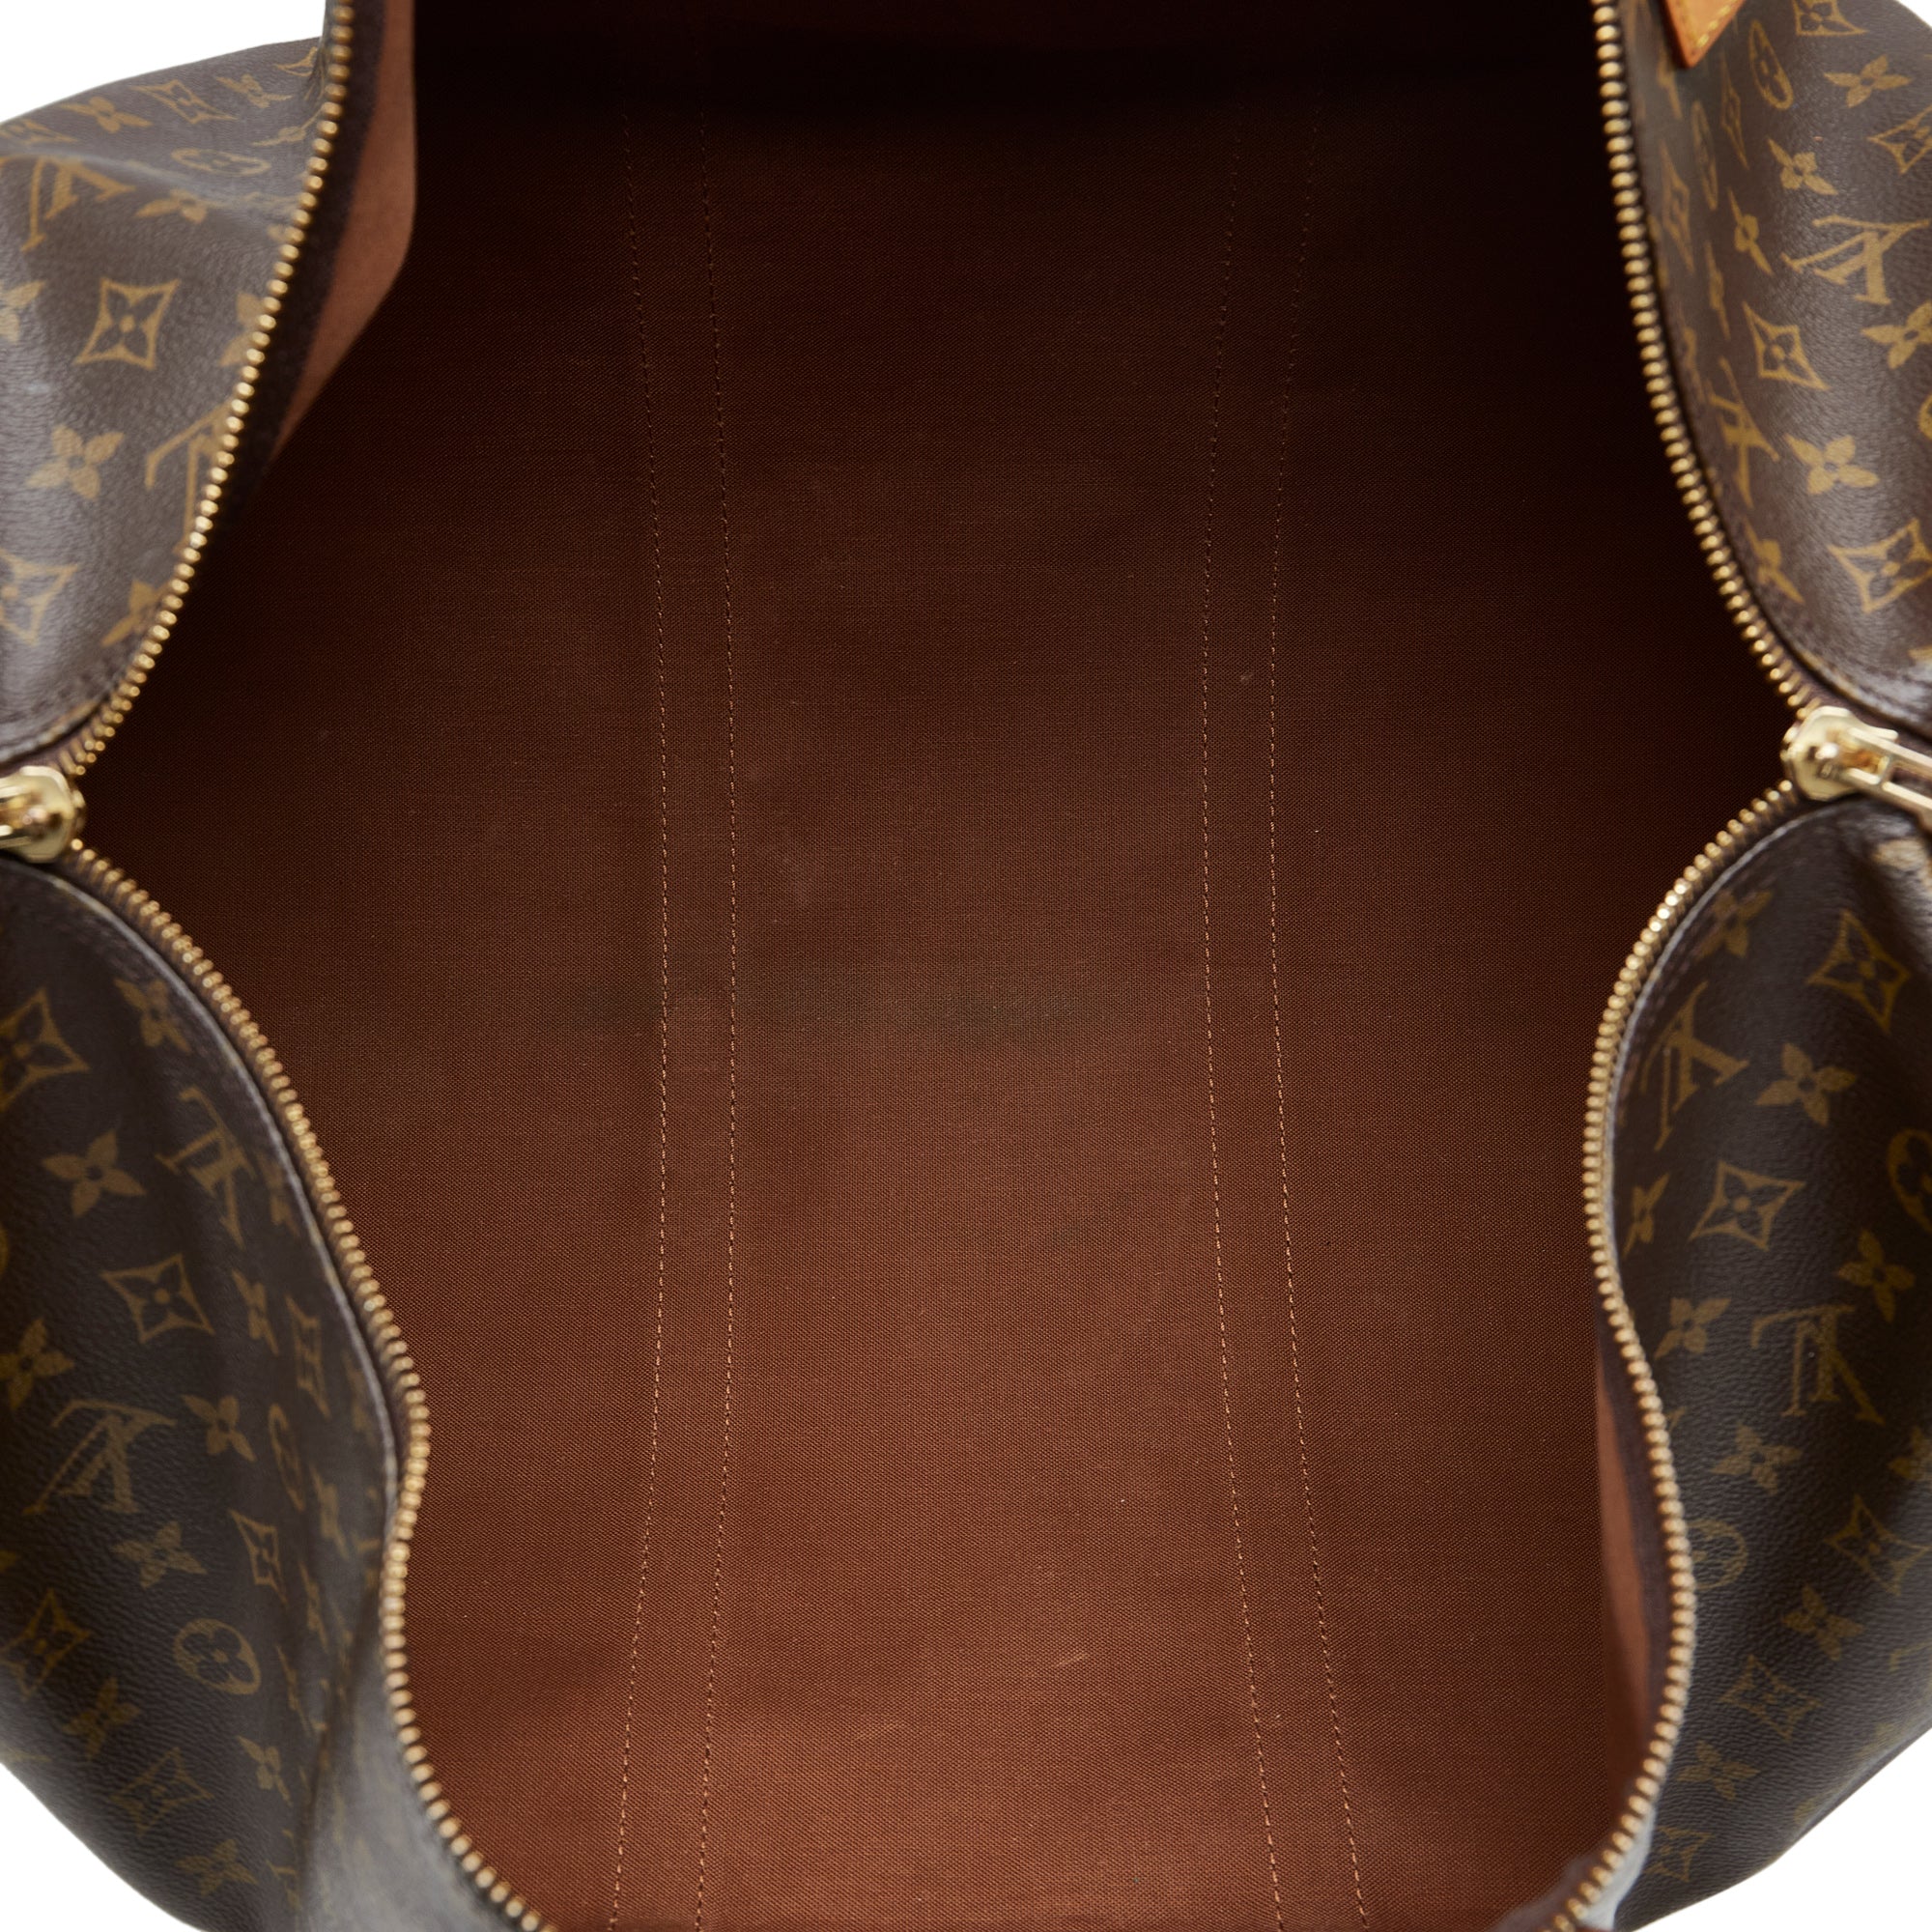 Keepall cloth travel bag Louis Vuitton Brown in Cloth - 35985406